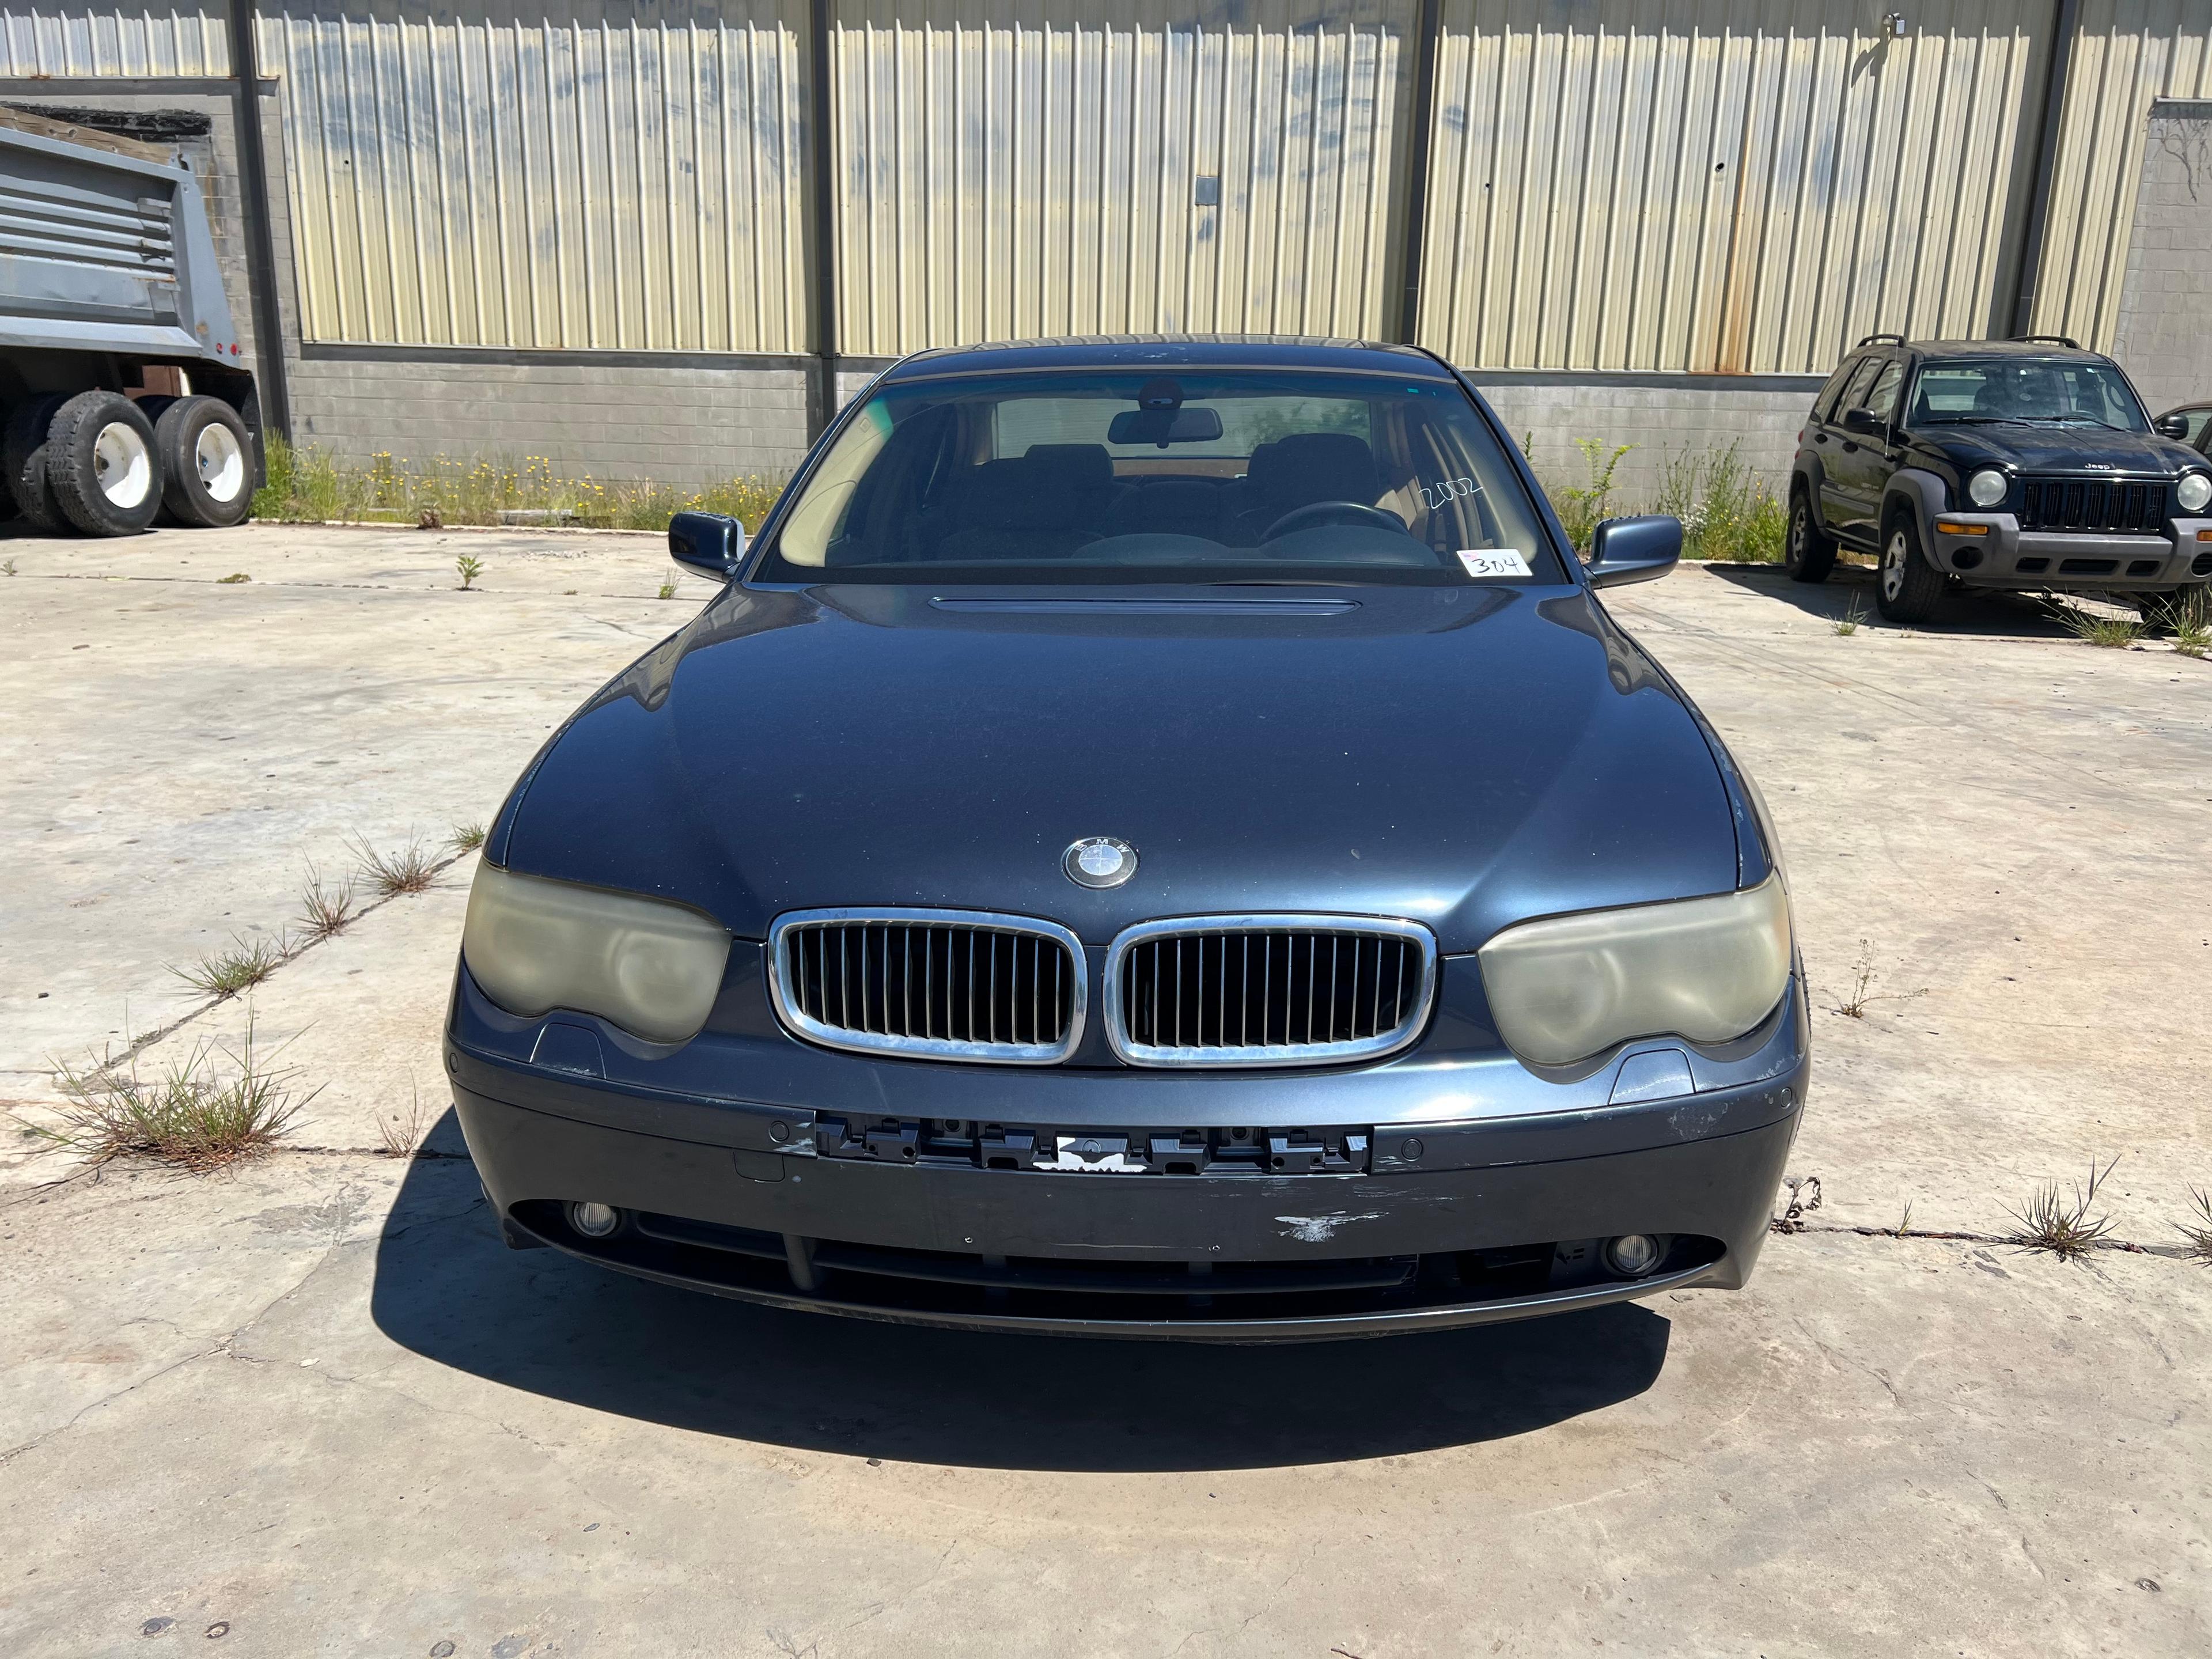 2002 BMW 745i VIN 6315